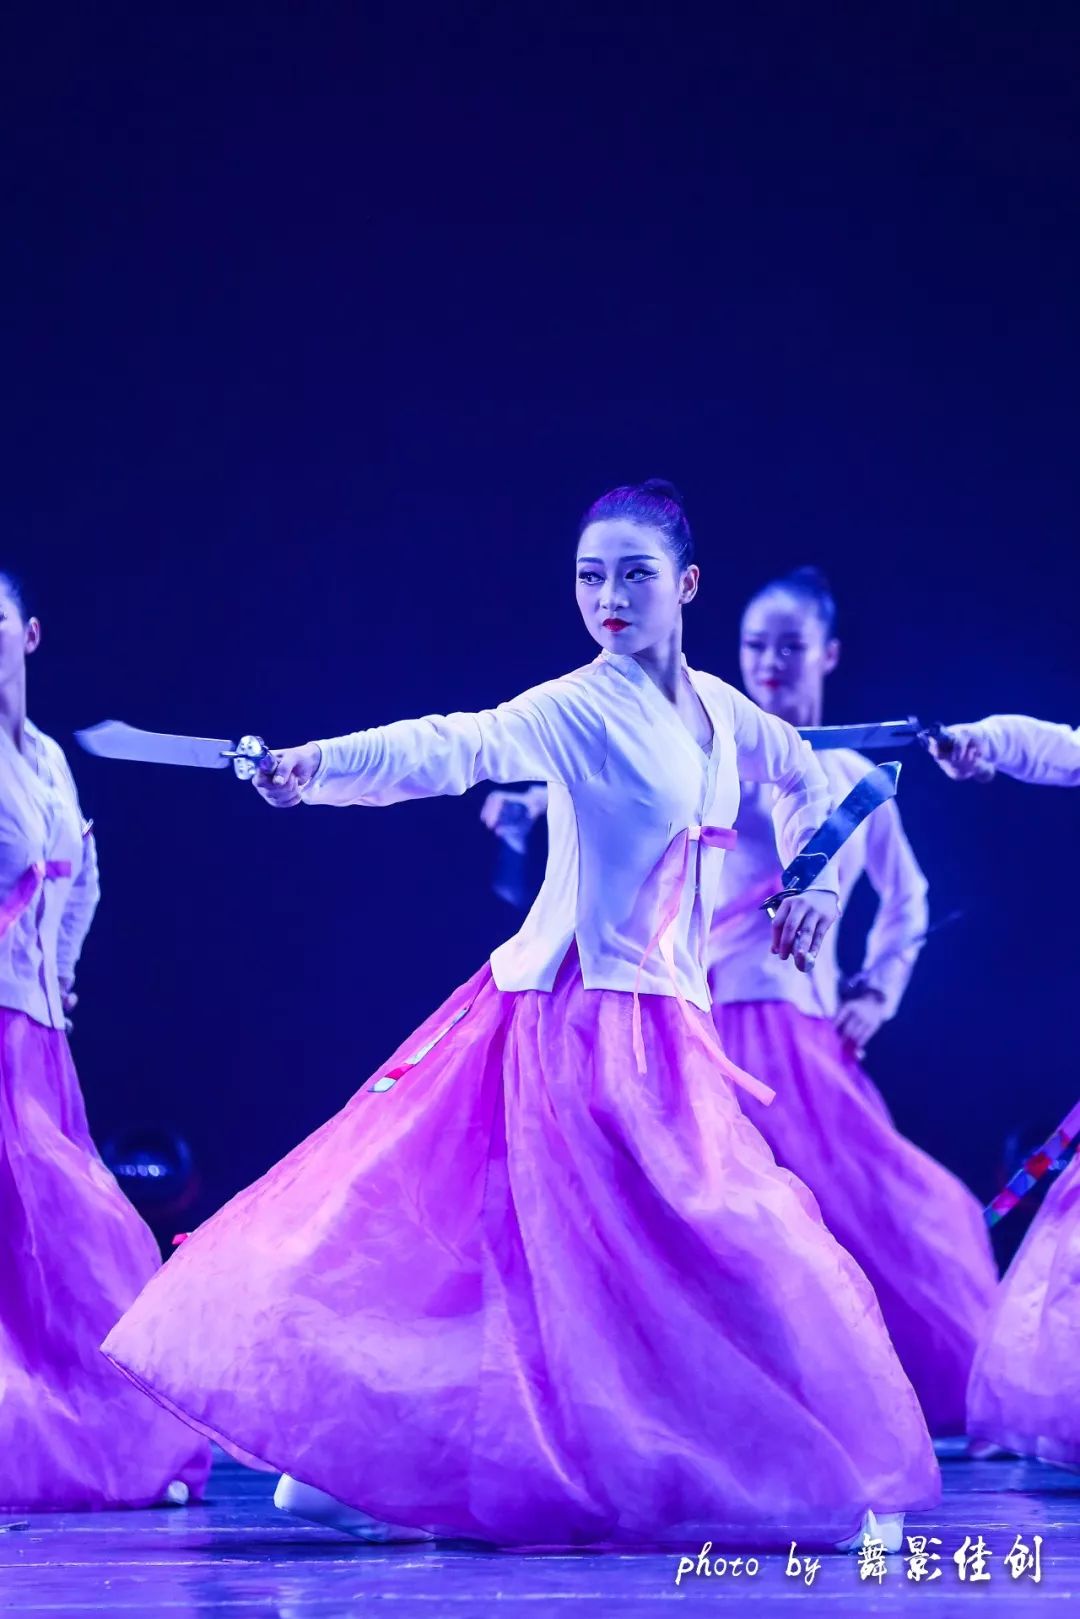 者:2016级舞蹈表演3班 表演者:2016级舞蹈表演1班 朝鲜族刀舞训练组合